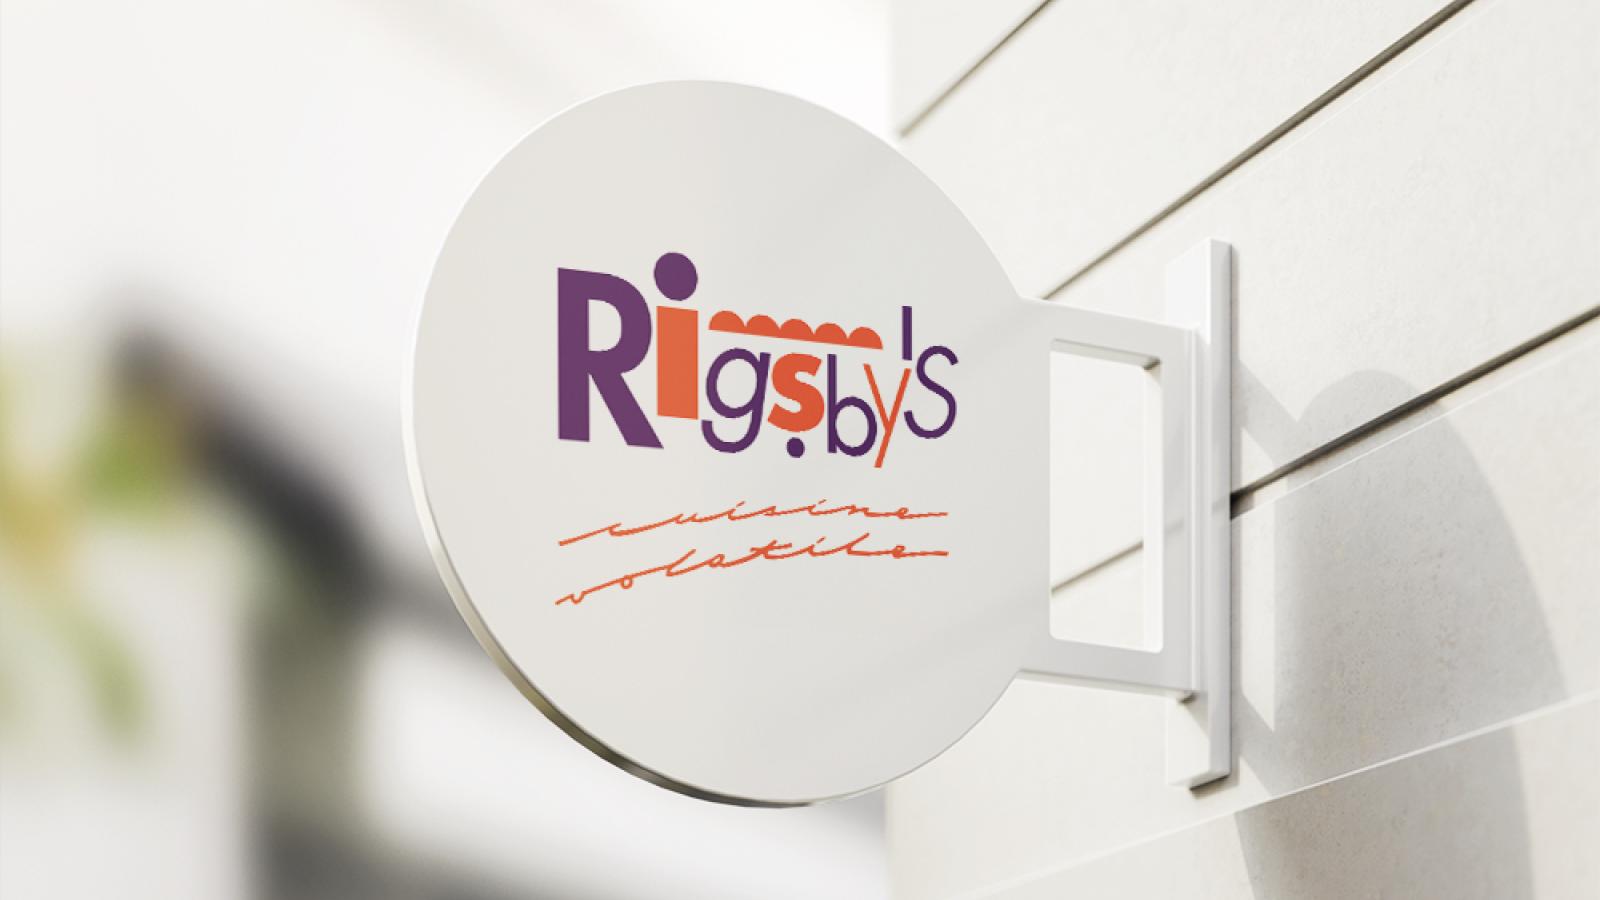 Rigsby's restaurant brandmark